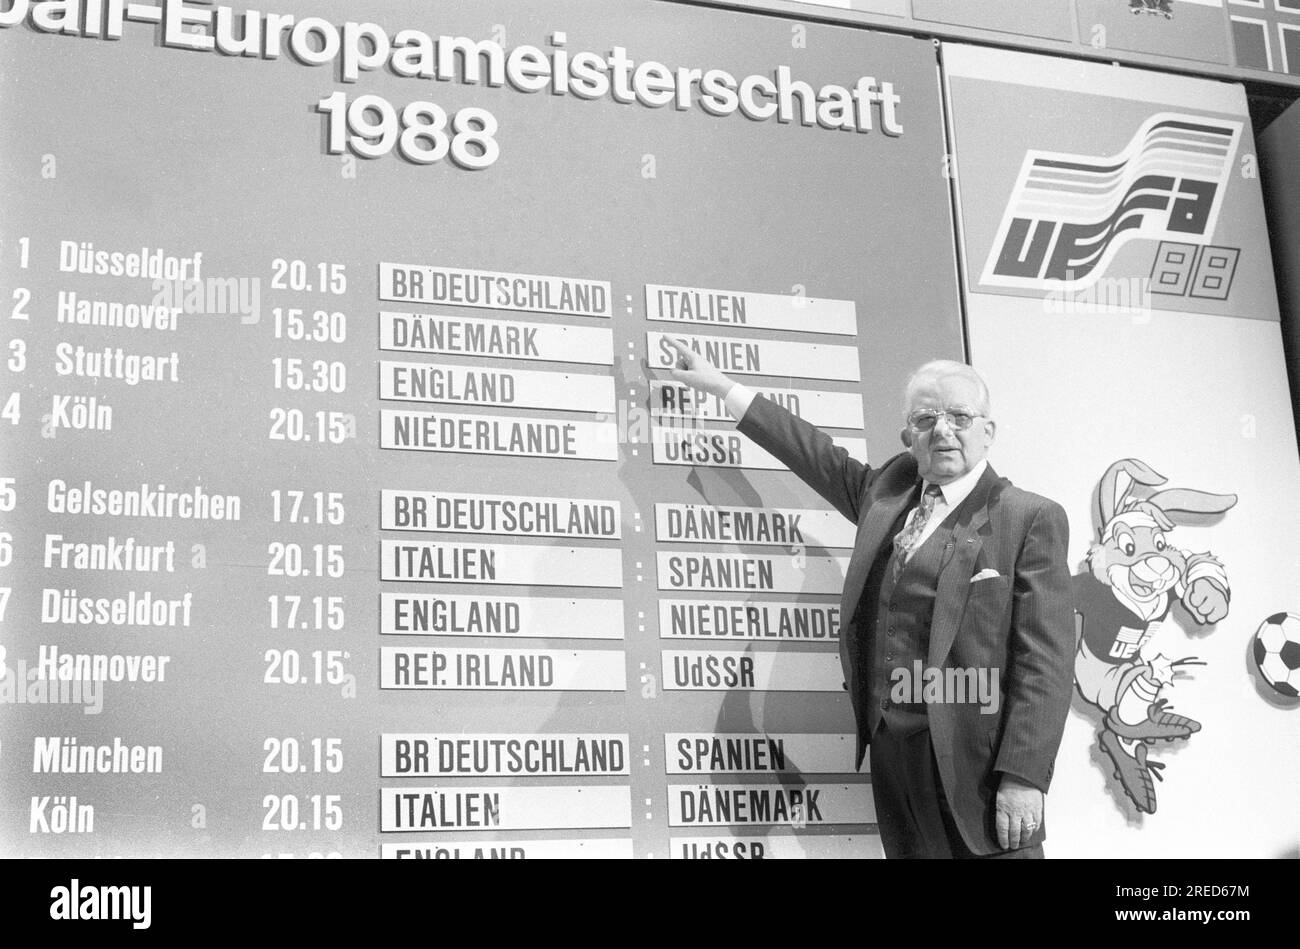 Championnat d'Europe 1988 en Allemagne. Tirage au sort pour la finale à Düsseldorf 12.02.1988 . Le président de DFB Hermann Neuberger devant le tableau de tirage avec les appariements de match. [traduction automatique] Banque D'Images